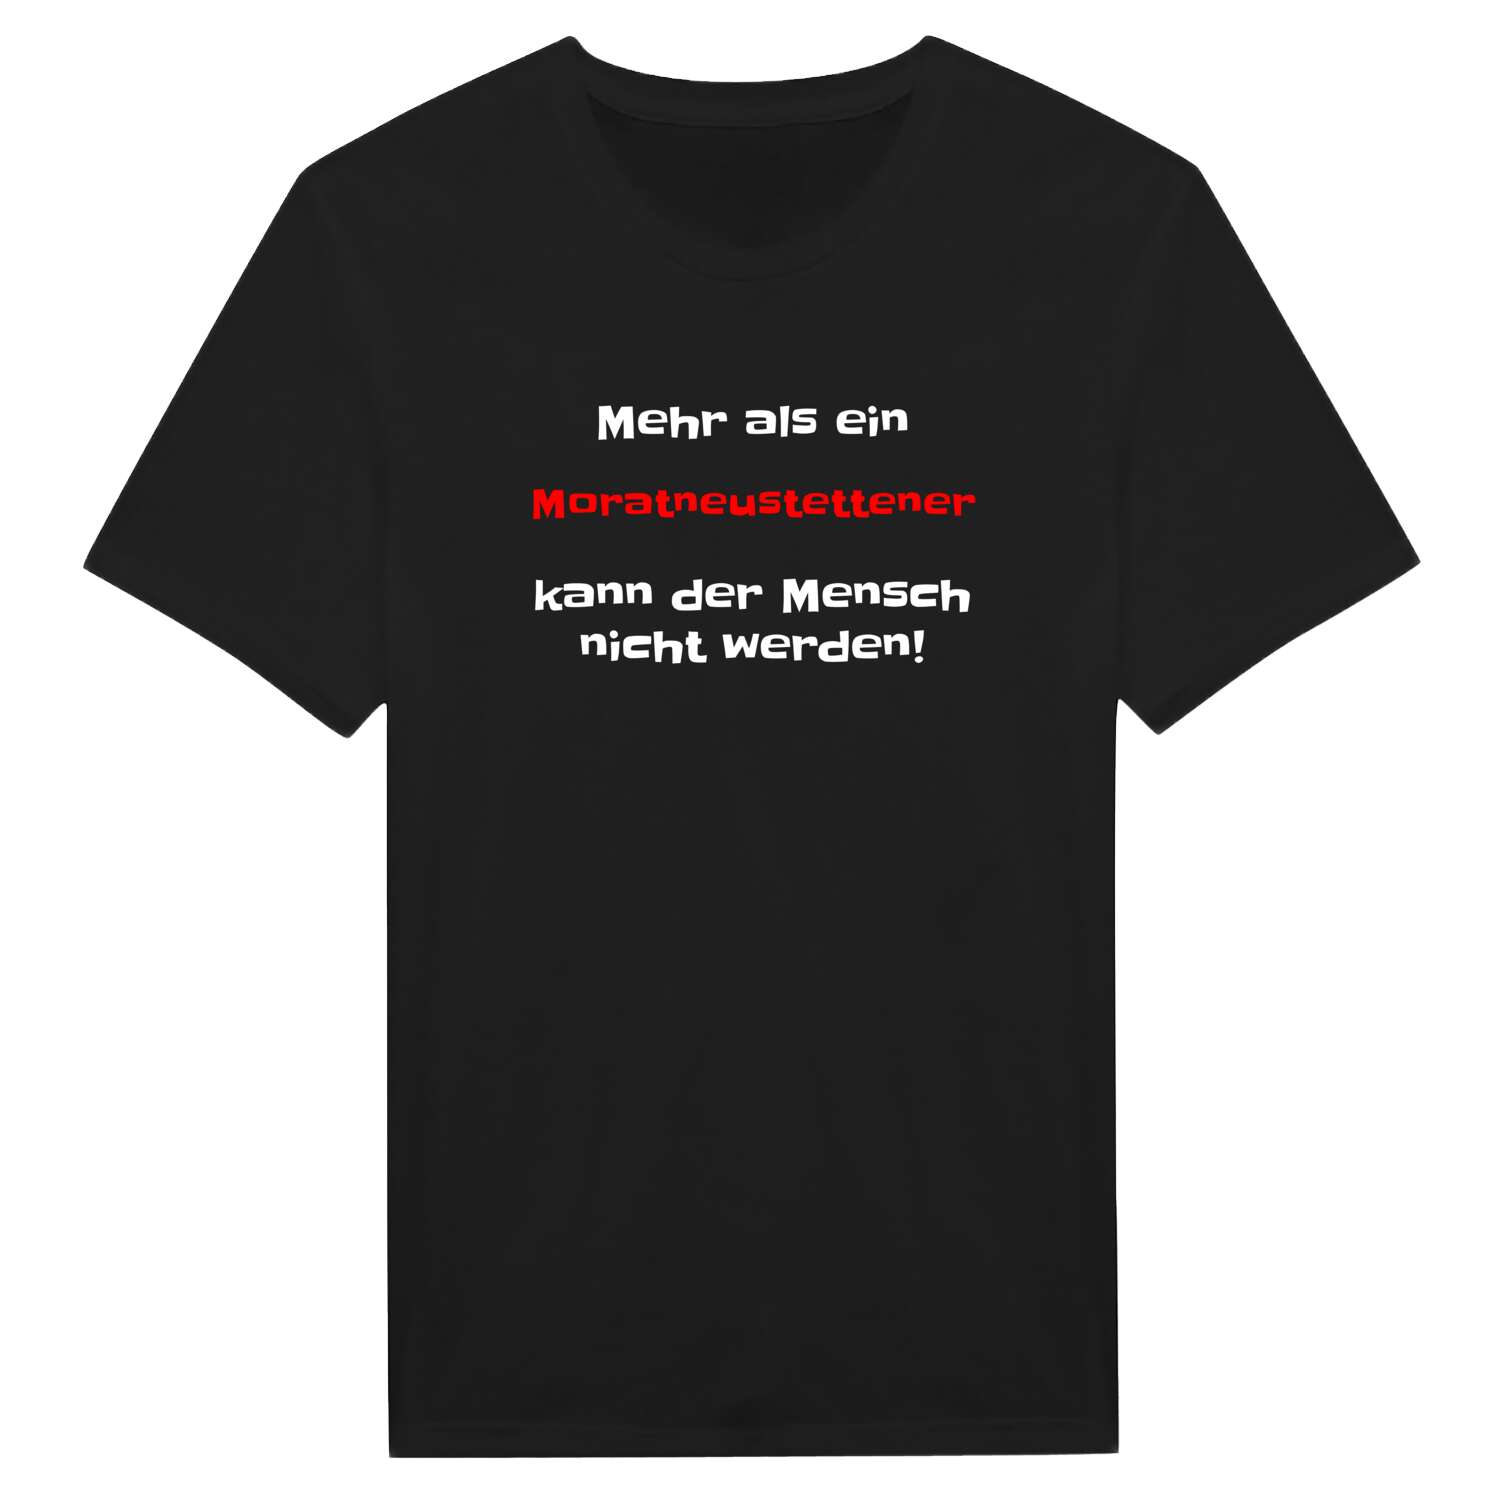 Moratneustetten T-Shirt »Mehr als ein«